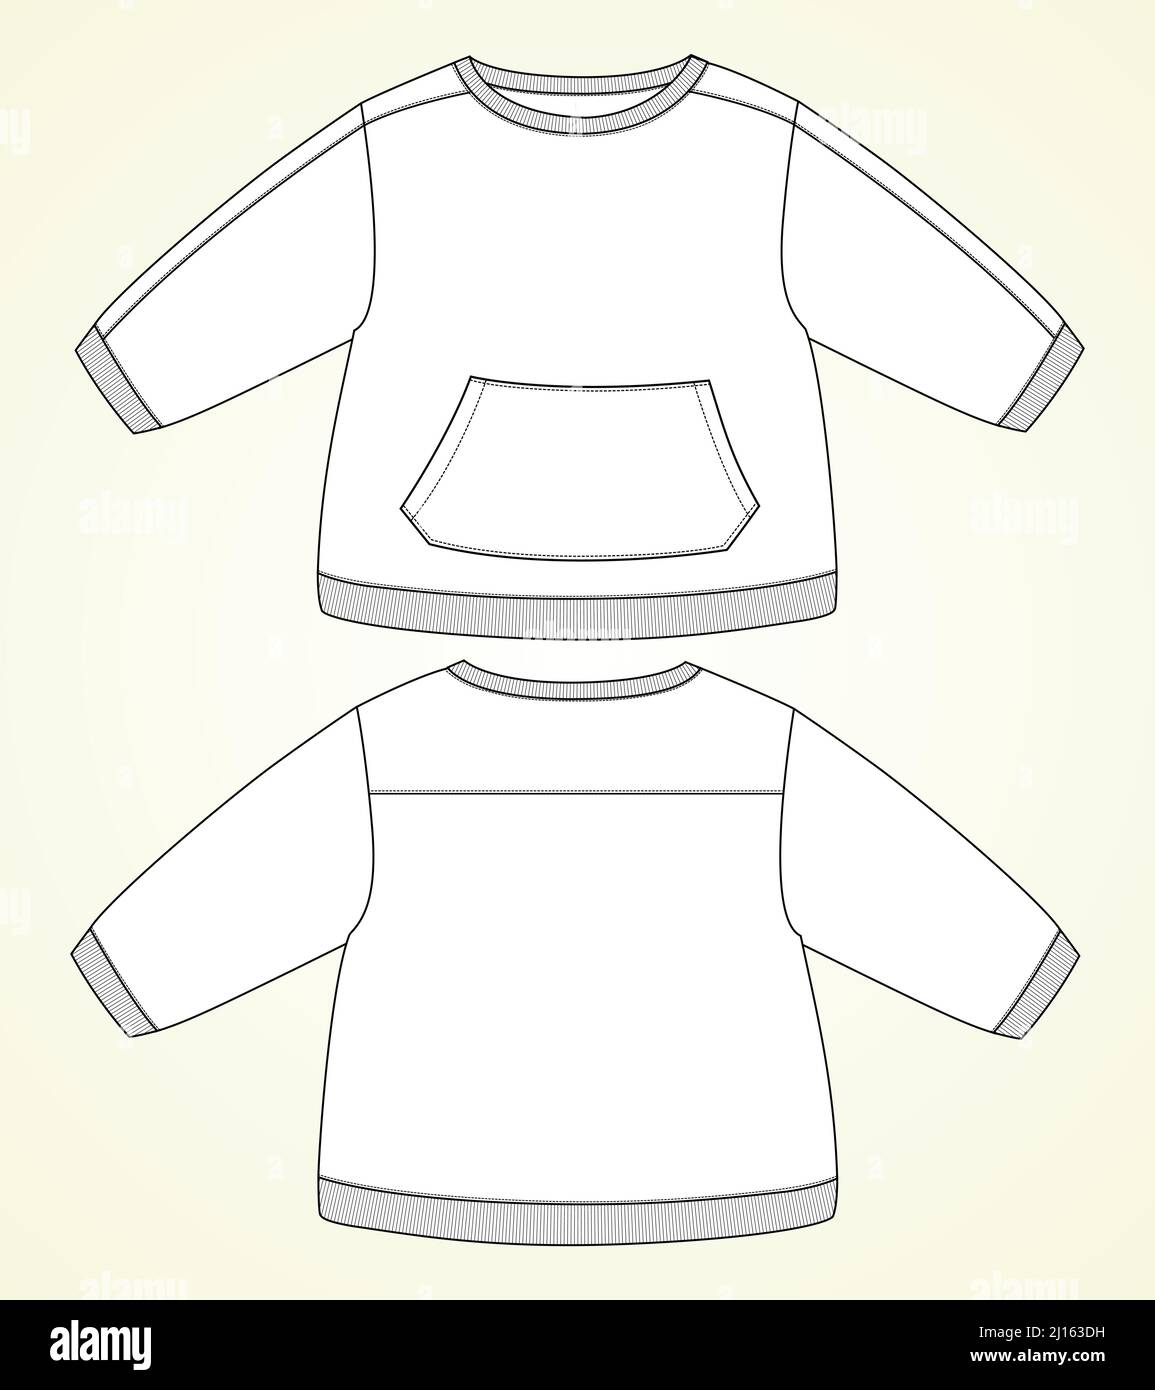 Langarm Sweatshirt mit Tasche Technische Mode flache Skizze Vektor Illustration Vorlage für Kinder. Bekleidung Bekleidung Design Mock Up CAD. Stock Vektor